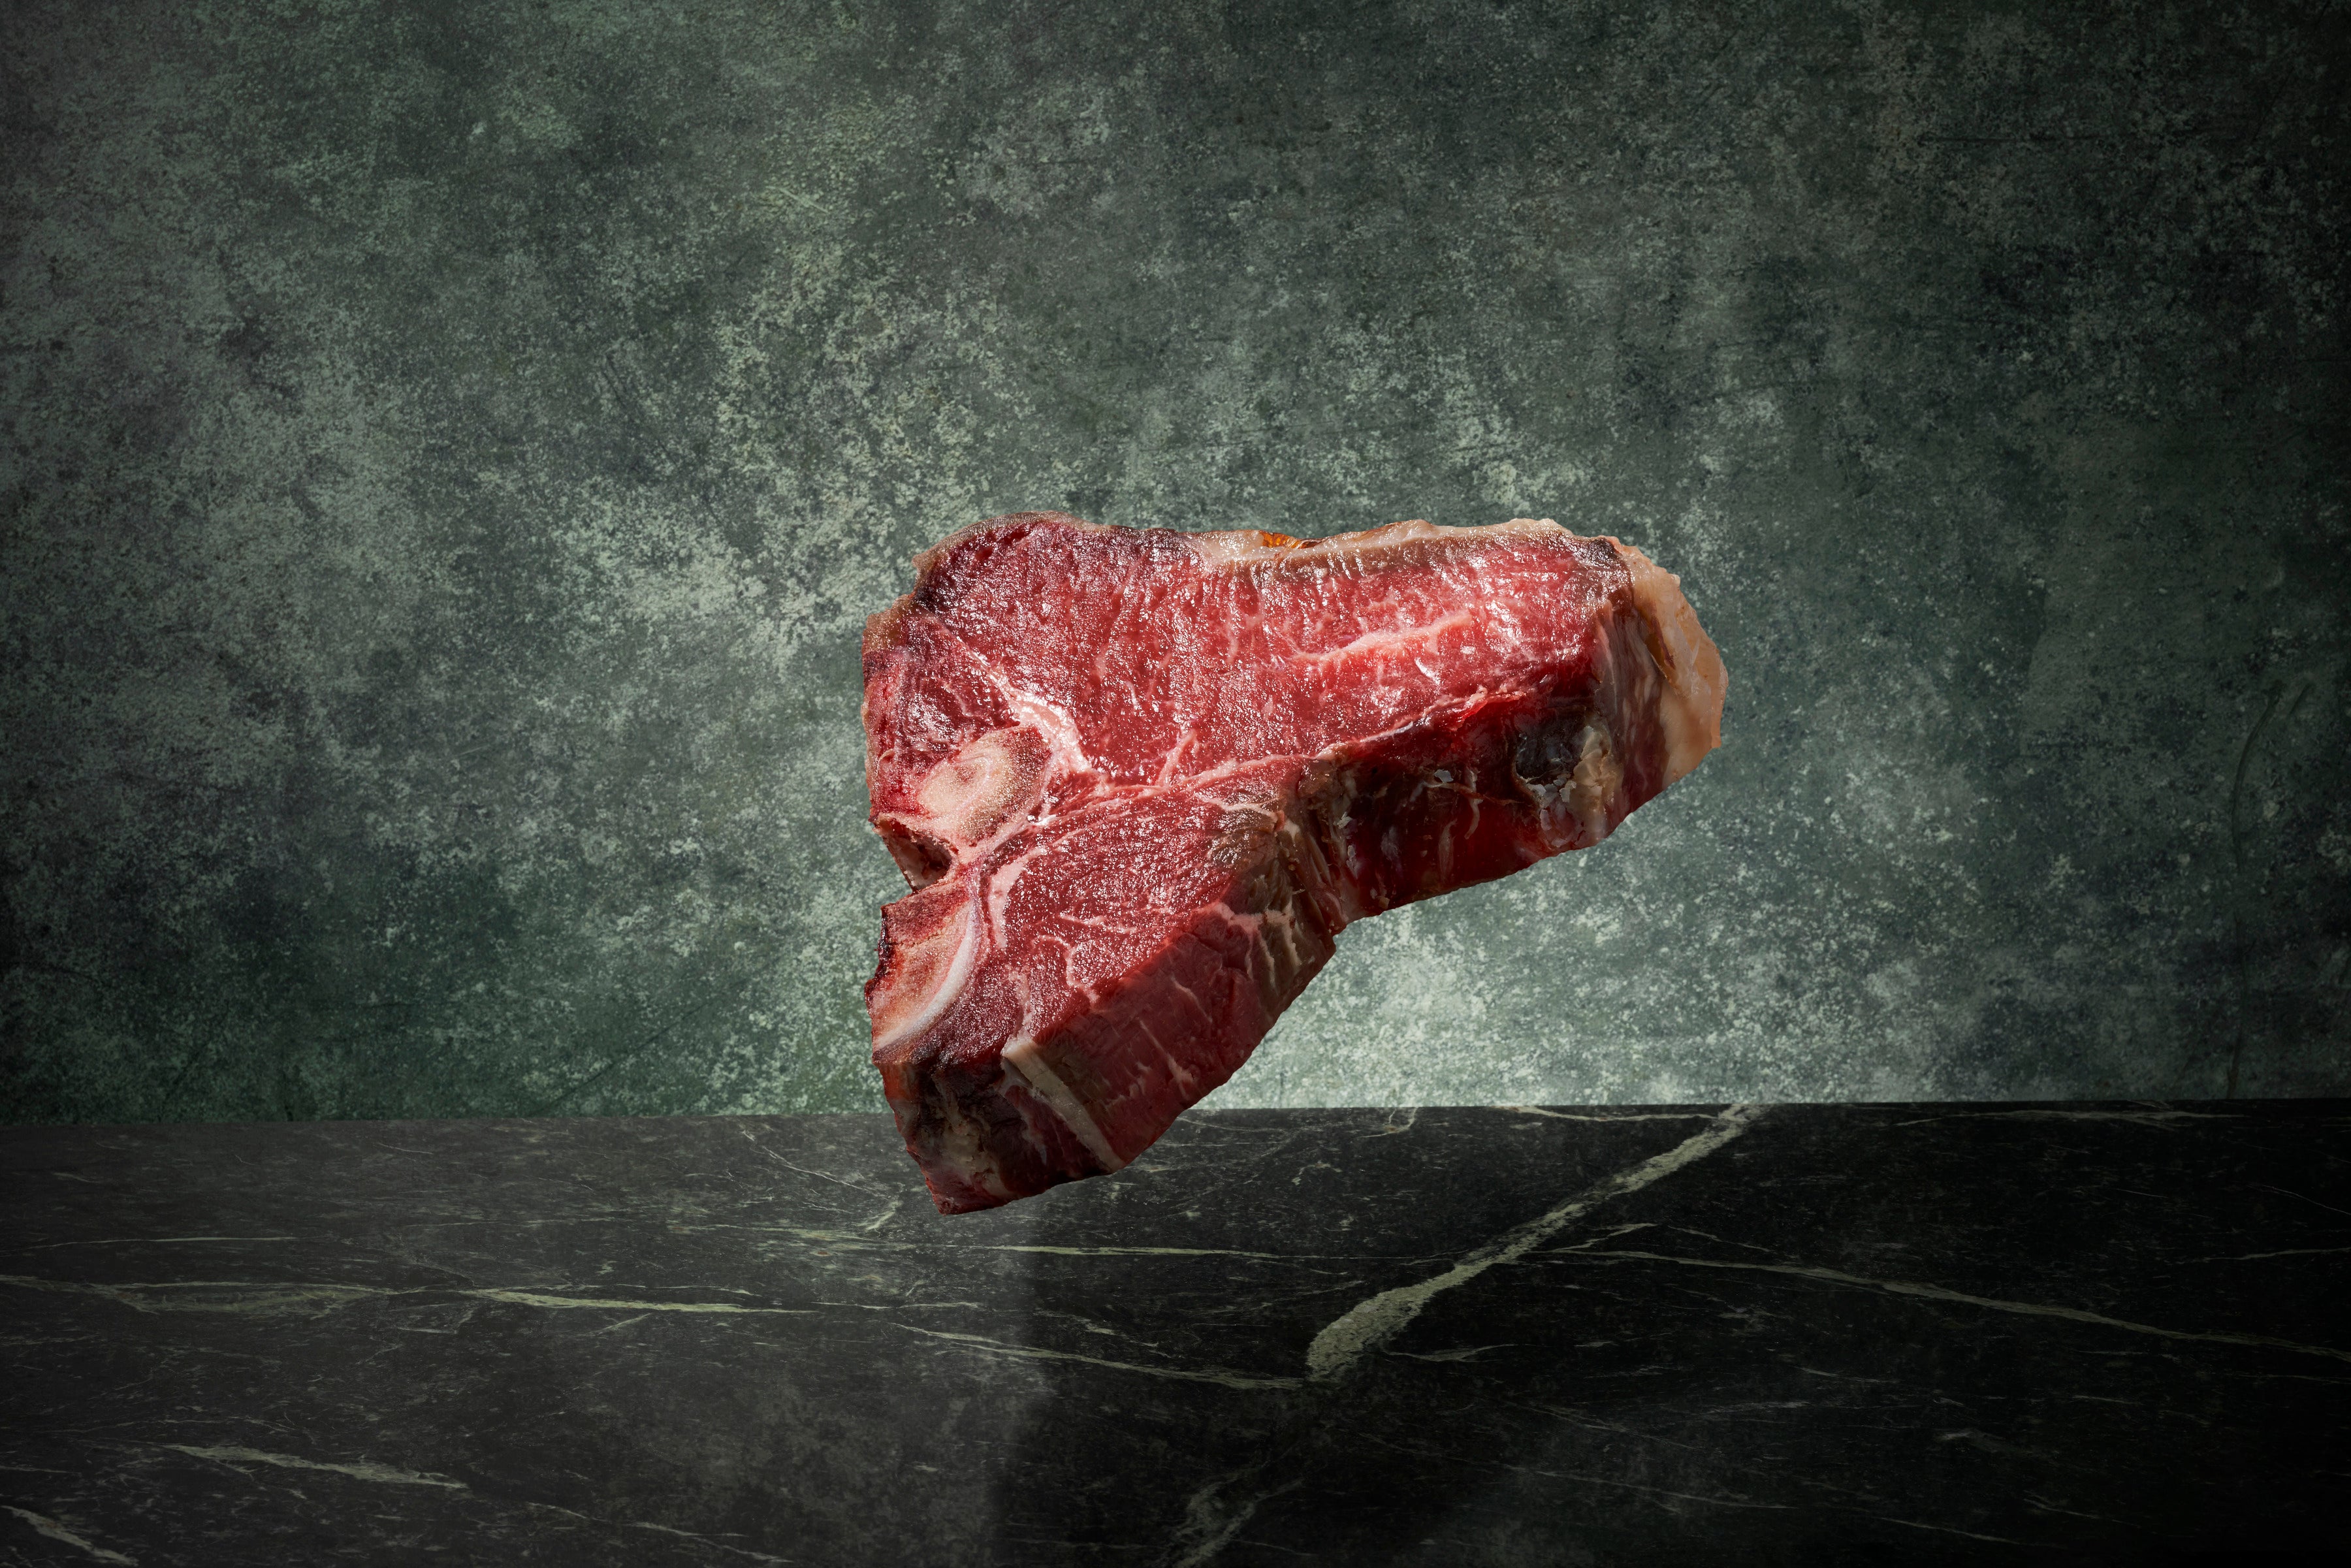 Das T-Bone zählt zu den beliebtesten Steaks. Es wird aus dem hinteren Teil des Rinderrückens direkt bei der Lende geschnitten.